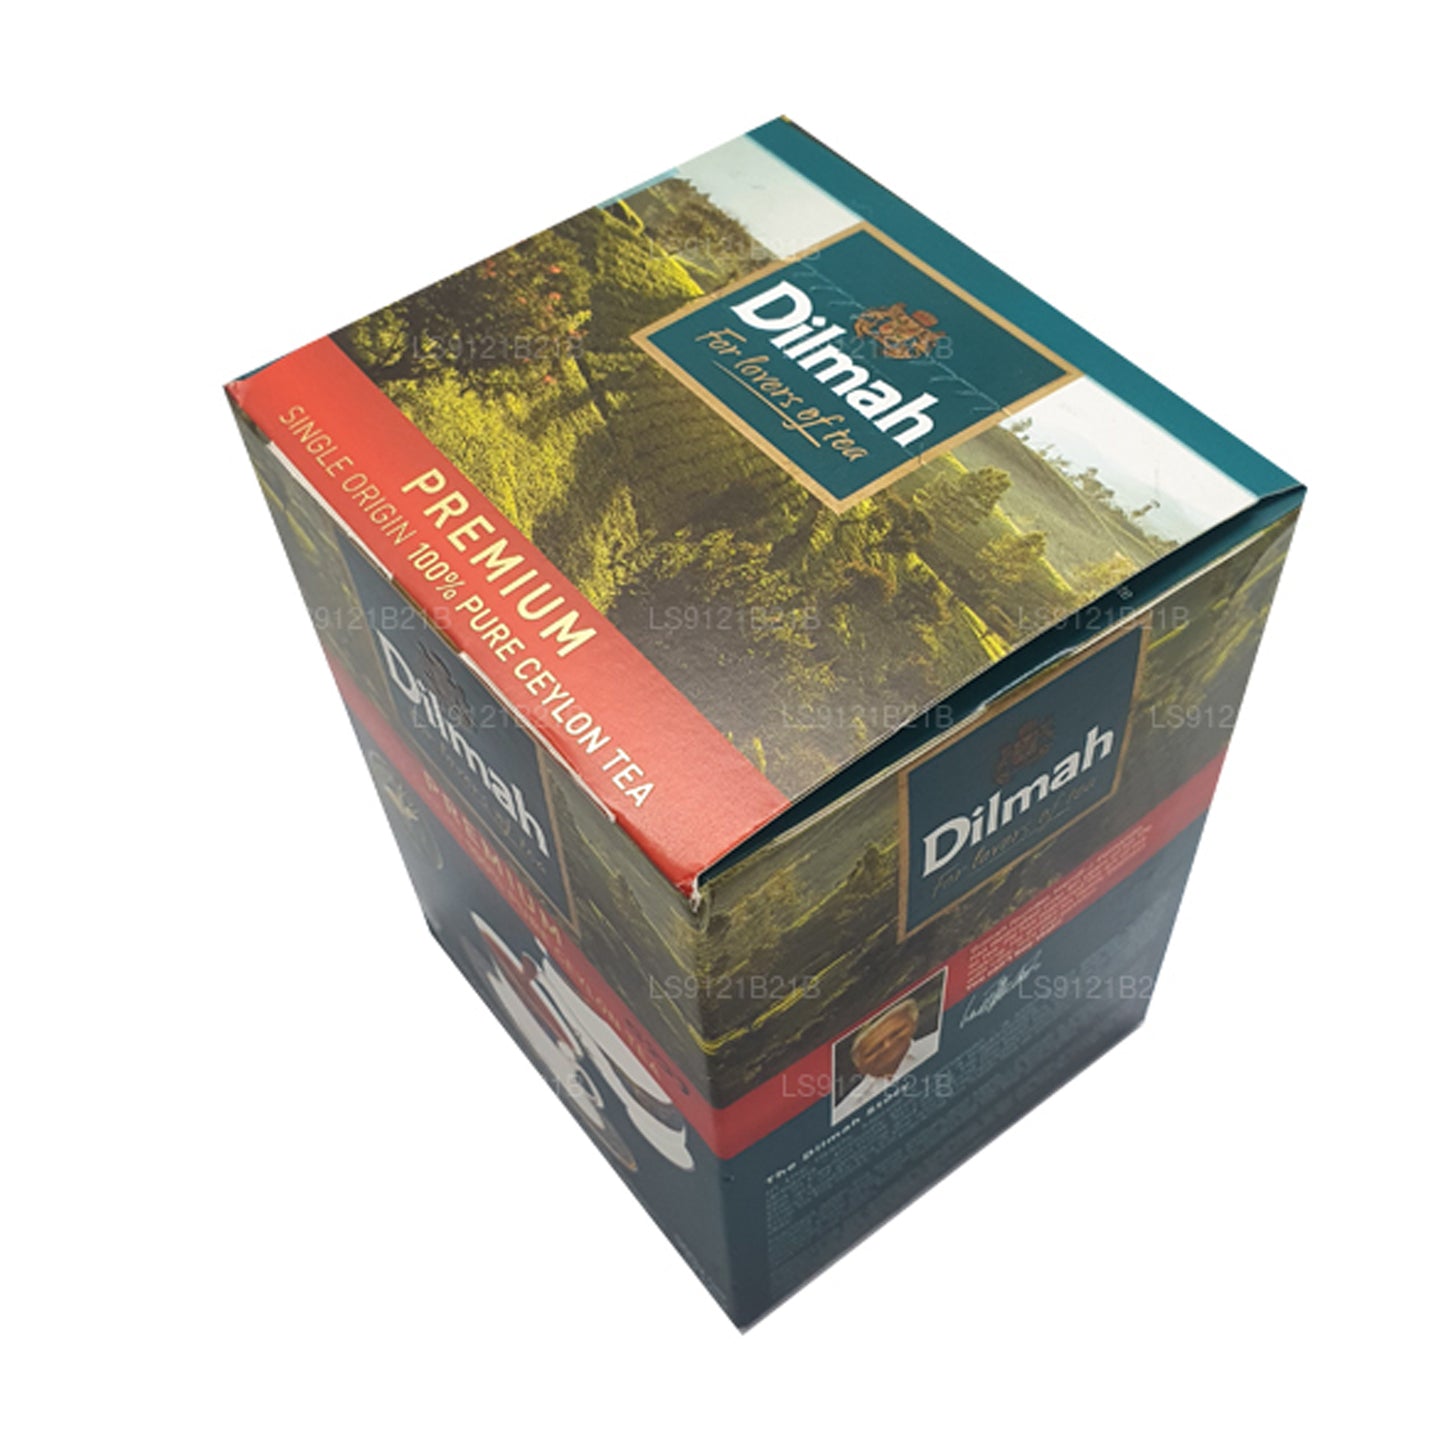 Цейлонский листовой чай Dilmah Премиум (125 г)